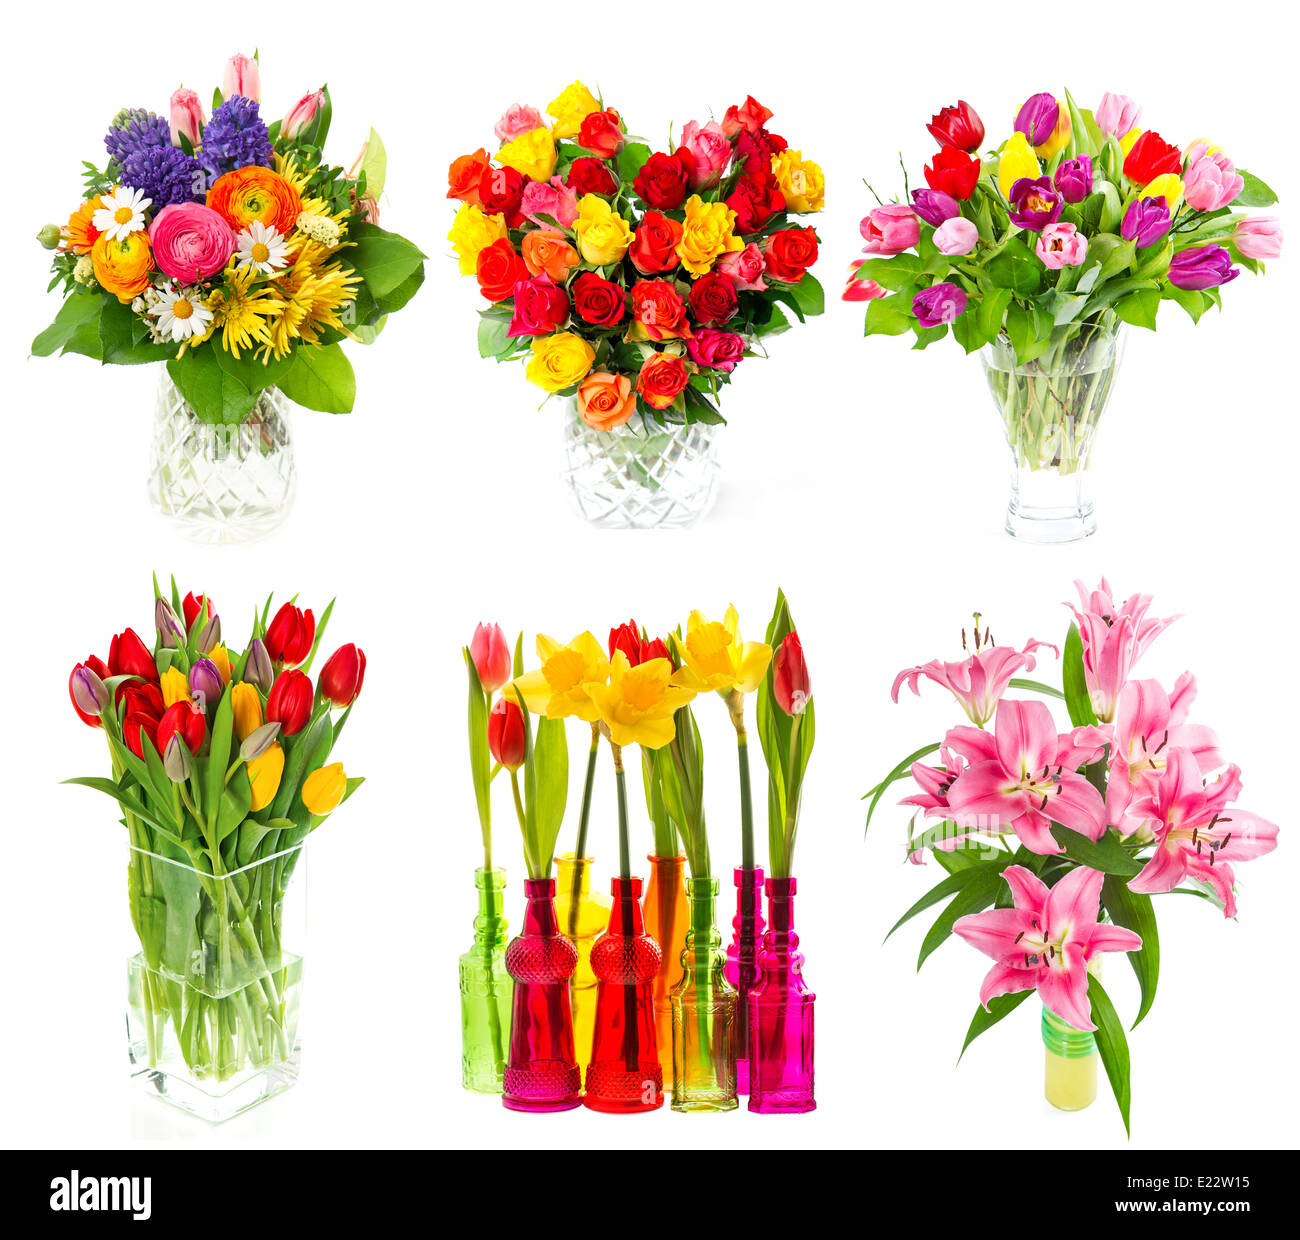 Beau bouquet de fleurs dans un vase. tulipes, roses, narcisses, fleurs de lys sur fond blanc. Banque D'Images